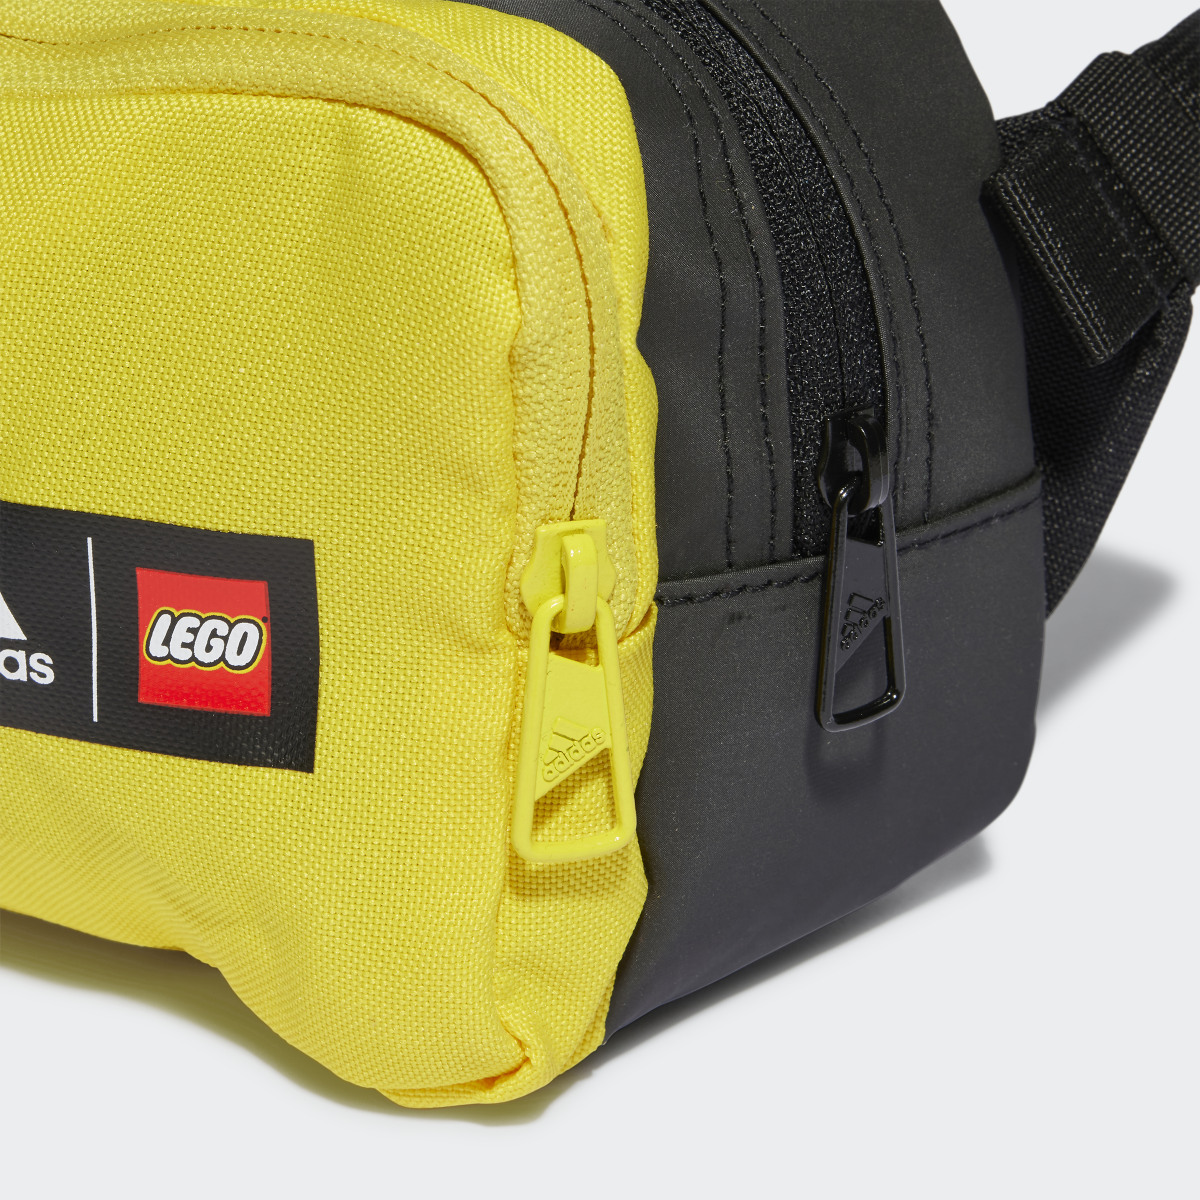 Adidas Bolsa de Cintura adidas x Classic LEGO®. 6